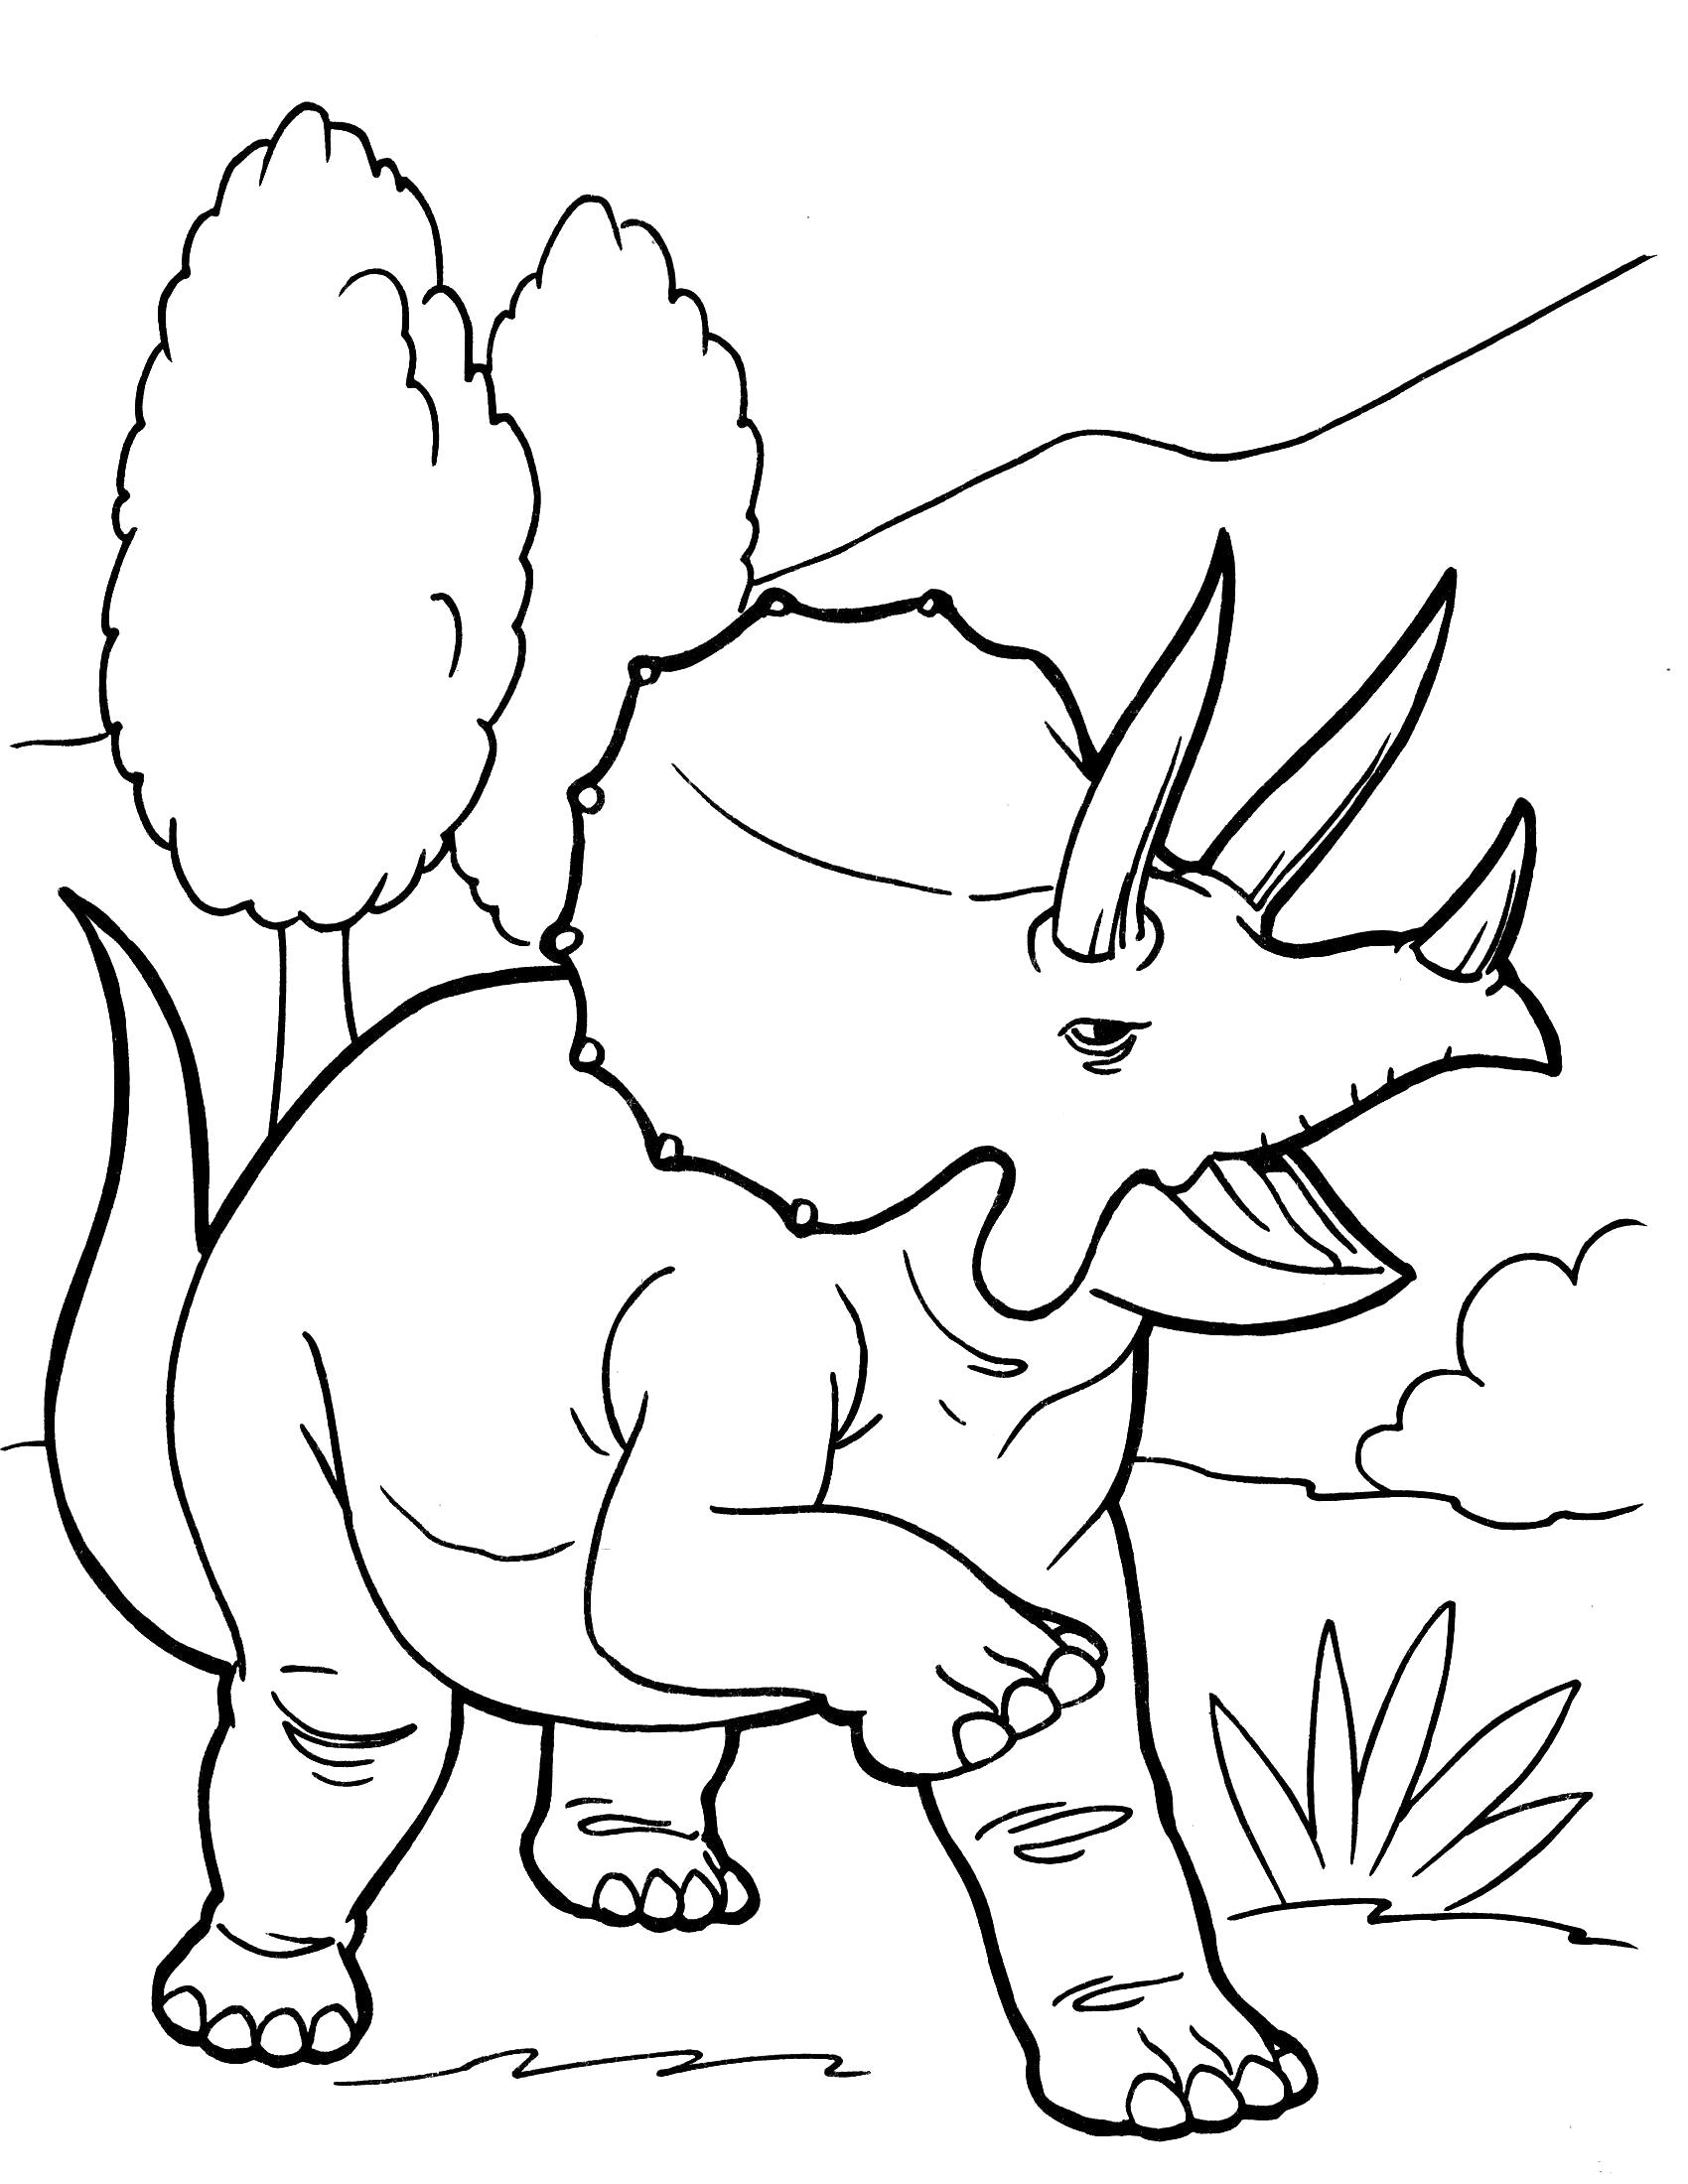 Раскраска Трицератопс. Скачать динозавр.  Распечатать динозавр